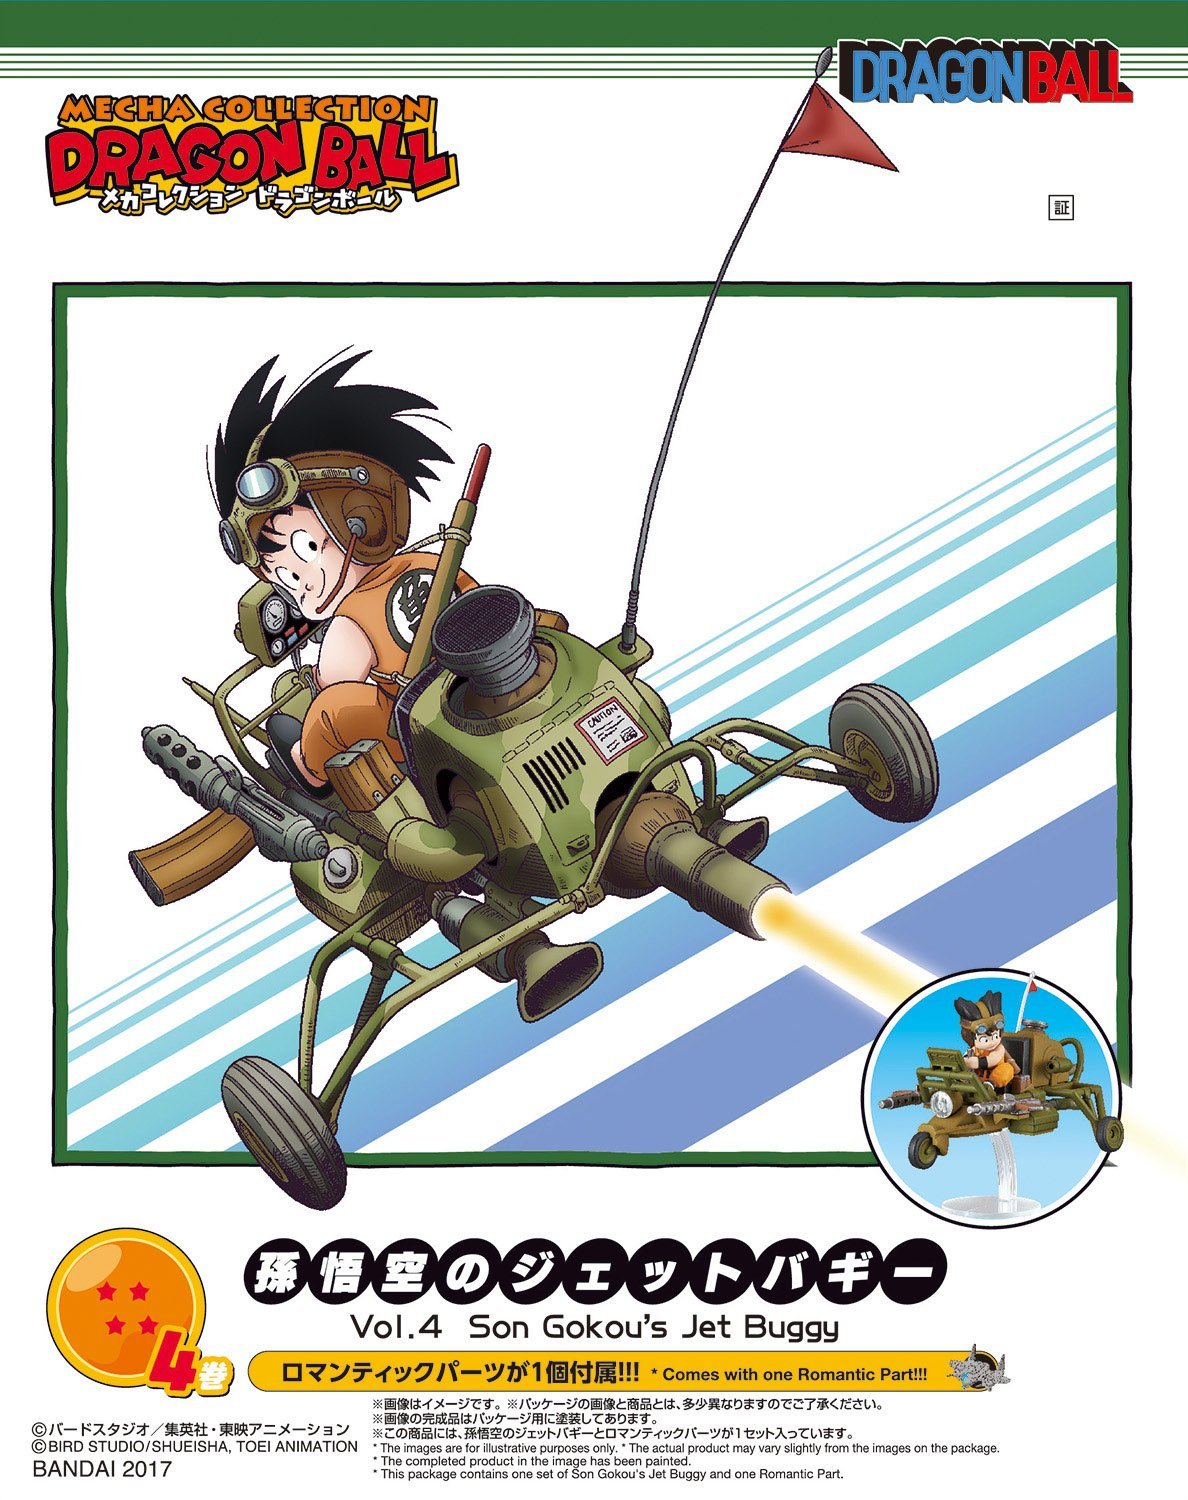 Mecha Collection - Dragon Ball Vol.4 Son Gokou’s Jet Buggy